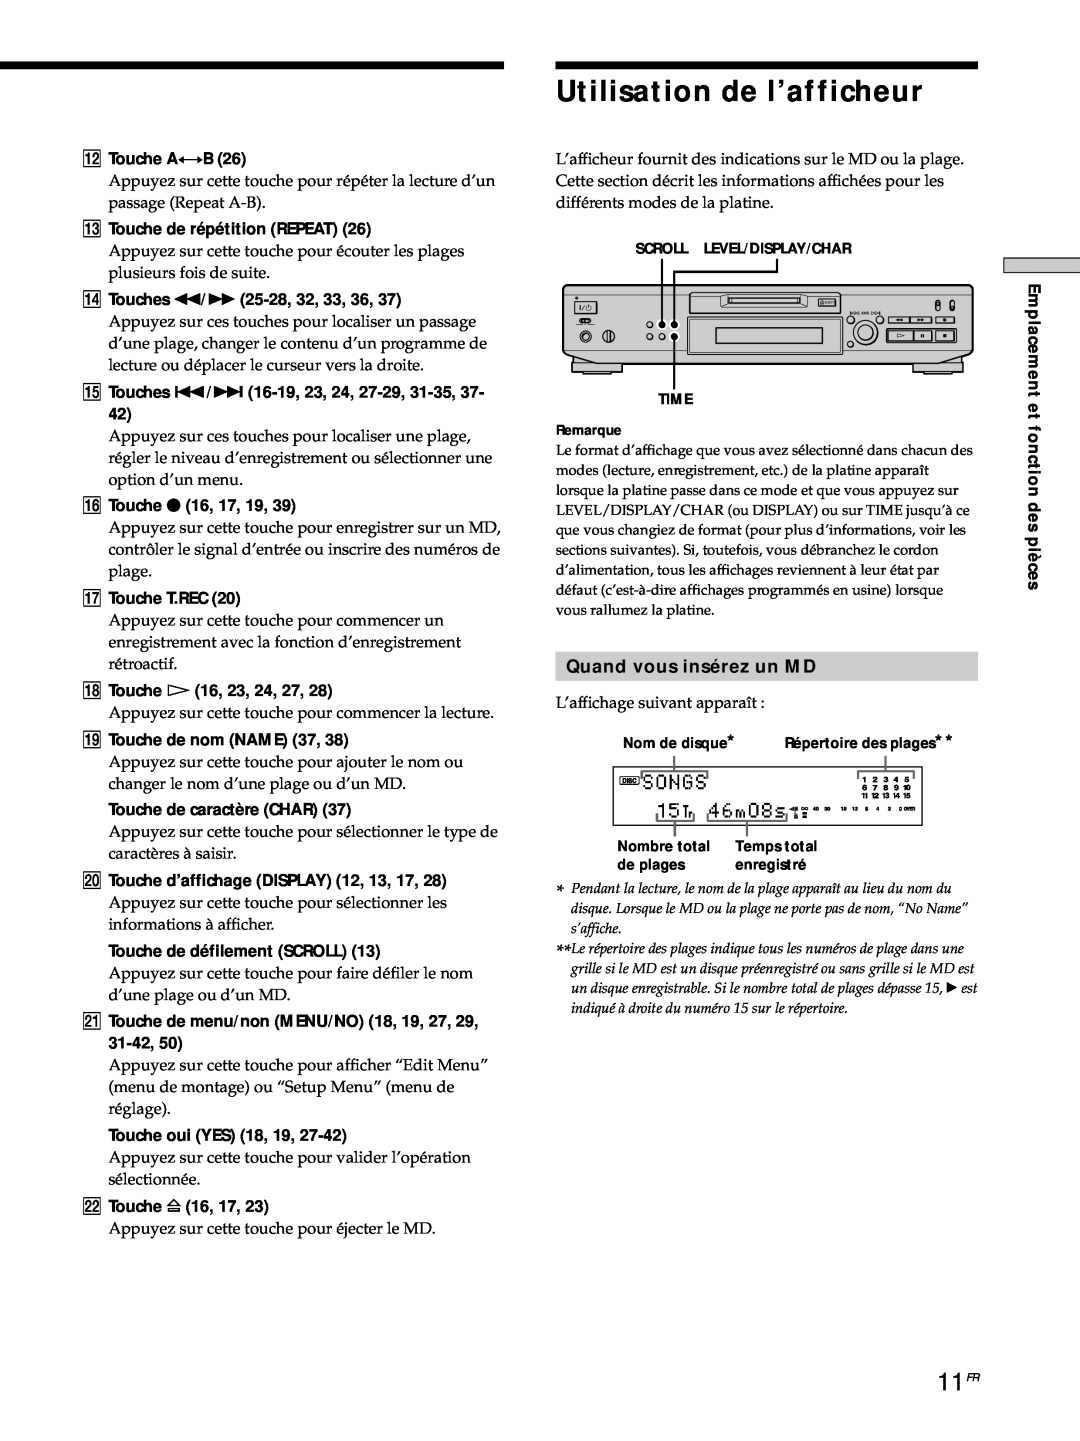 Sony MDS-JE530 manual Utilisation de l’afficheur, 11FR, Quand vous insérez un MD 